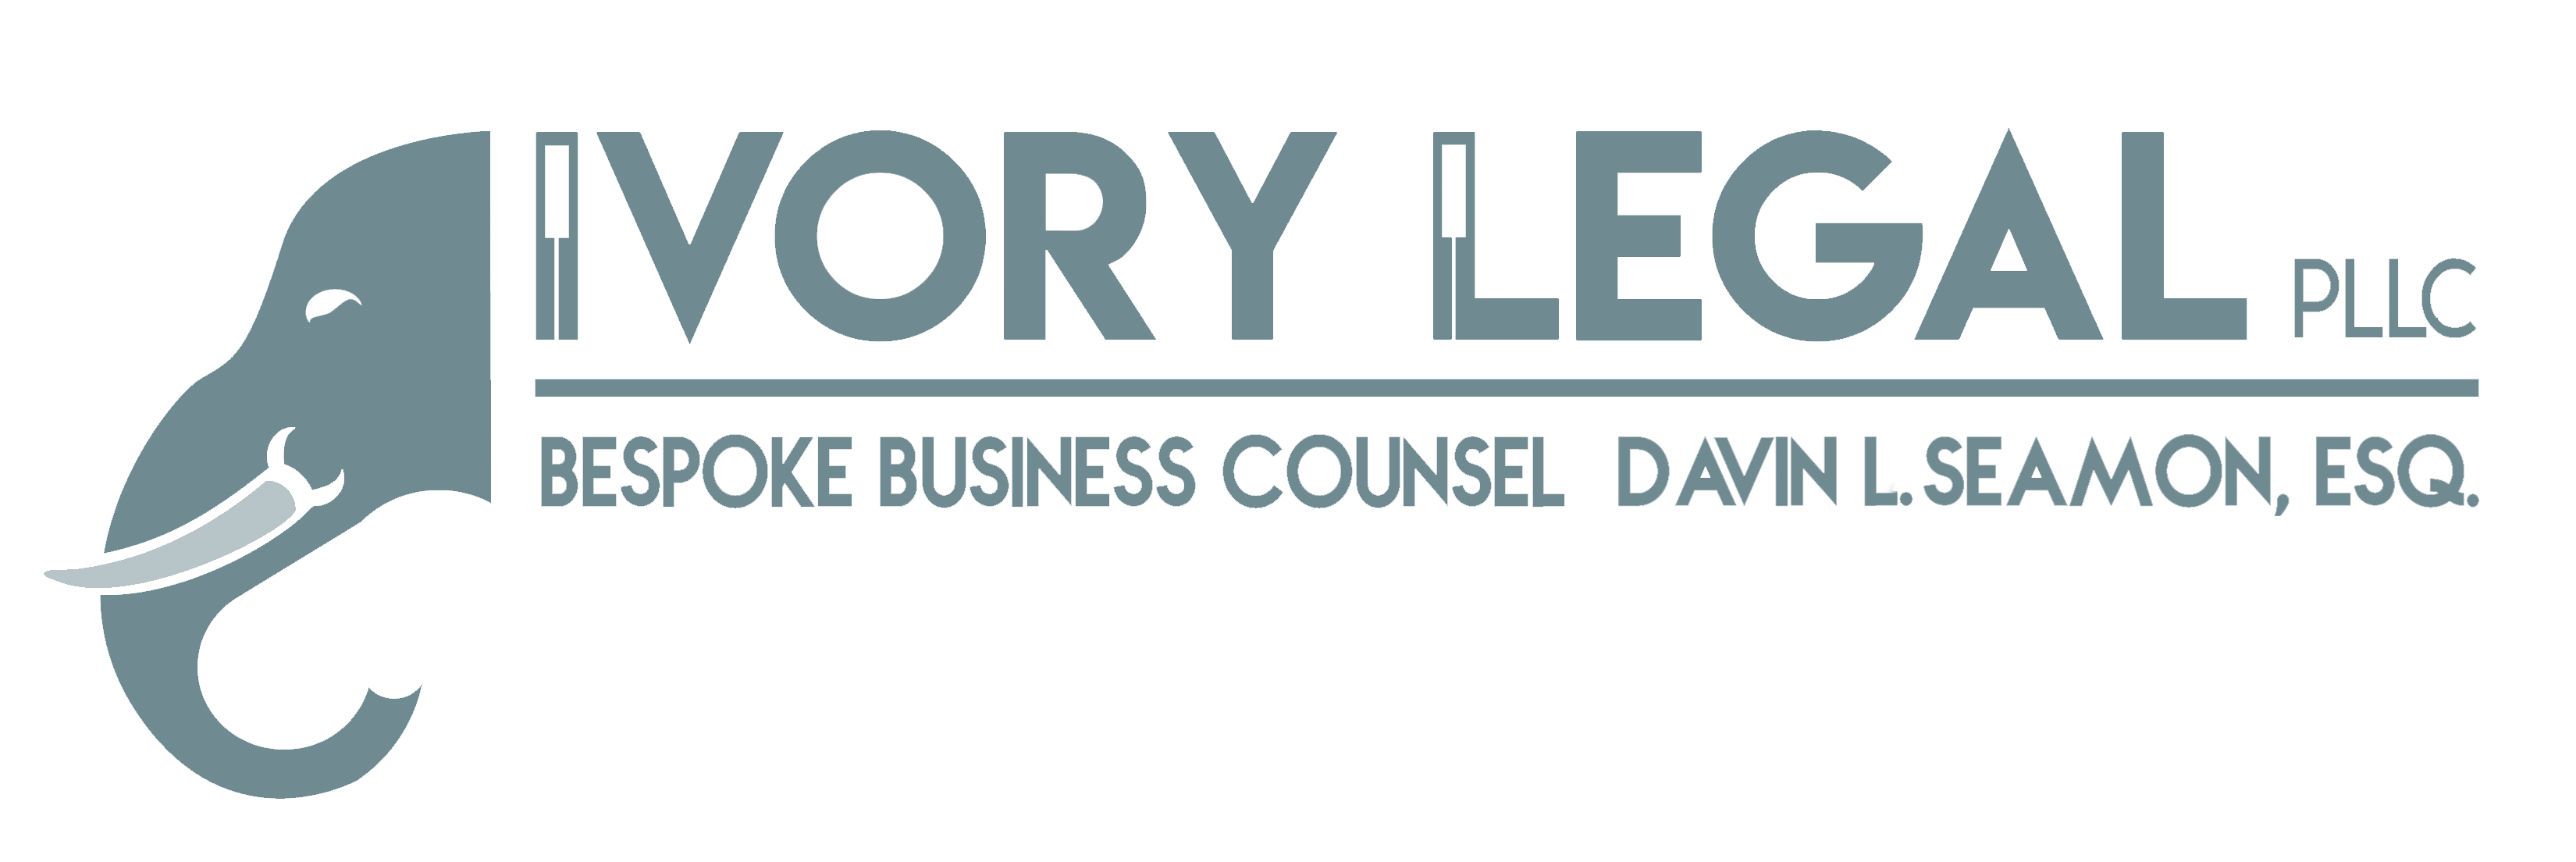 Ivory Legal PLLC